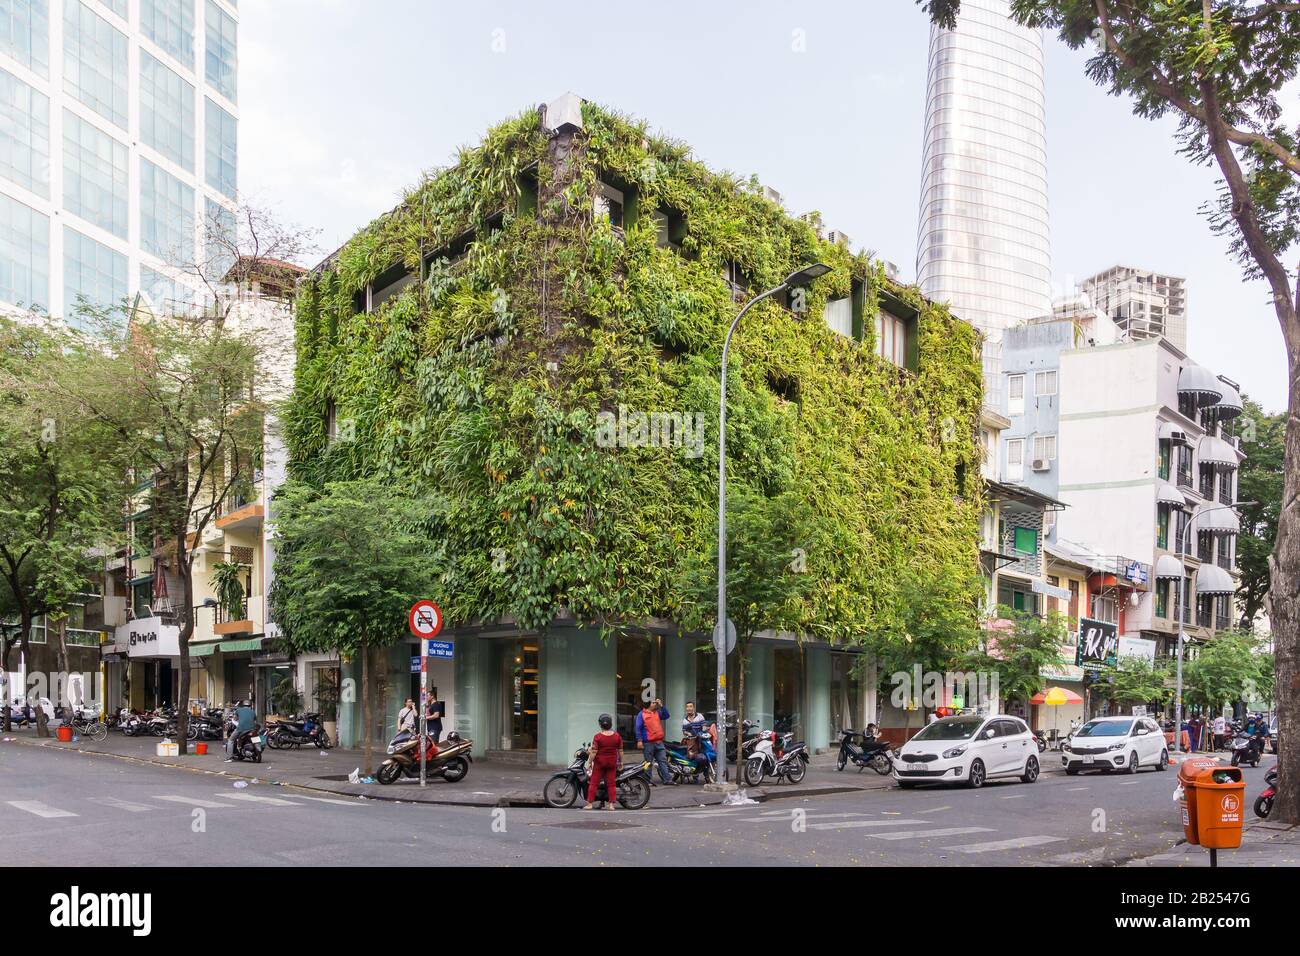 Living wall Saigon (Ho Chi Minh City) - Vertical garden on a building in Saigon, Vietnam, Southeast Asia. Stock Photo